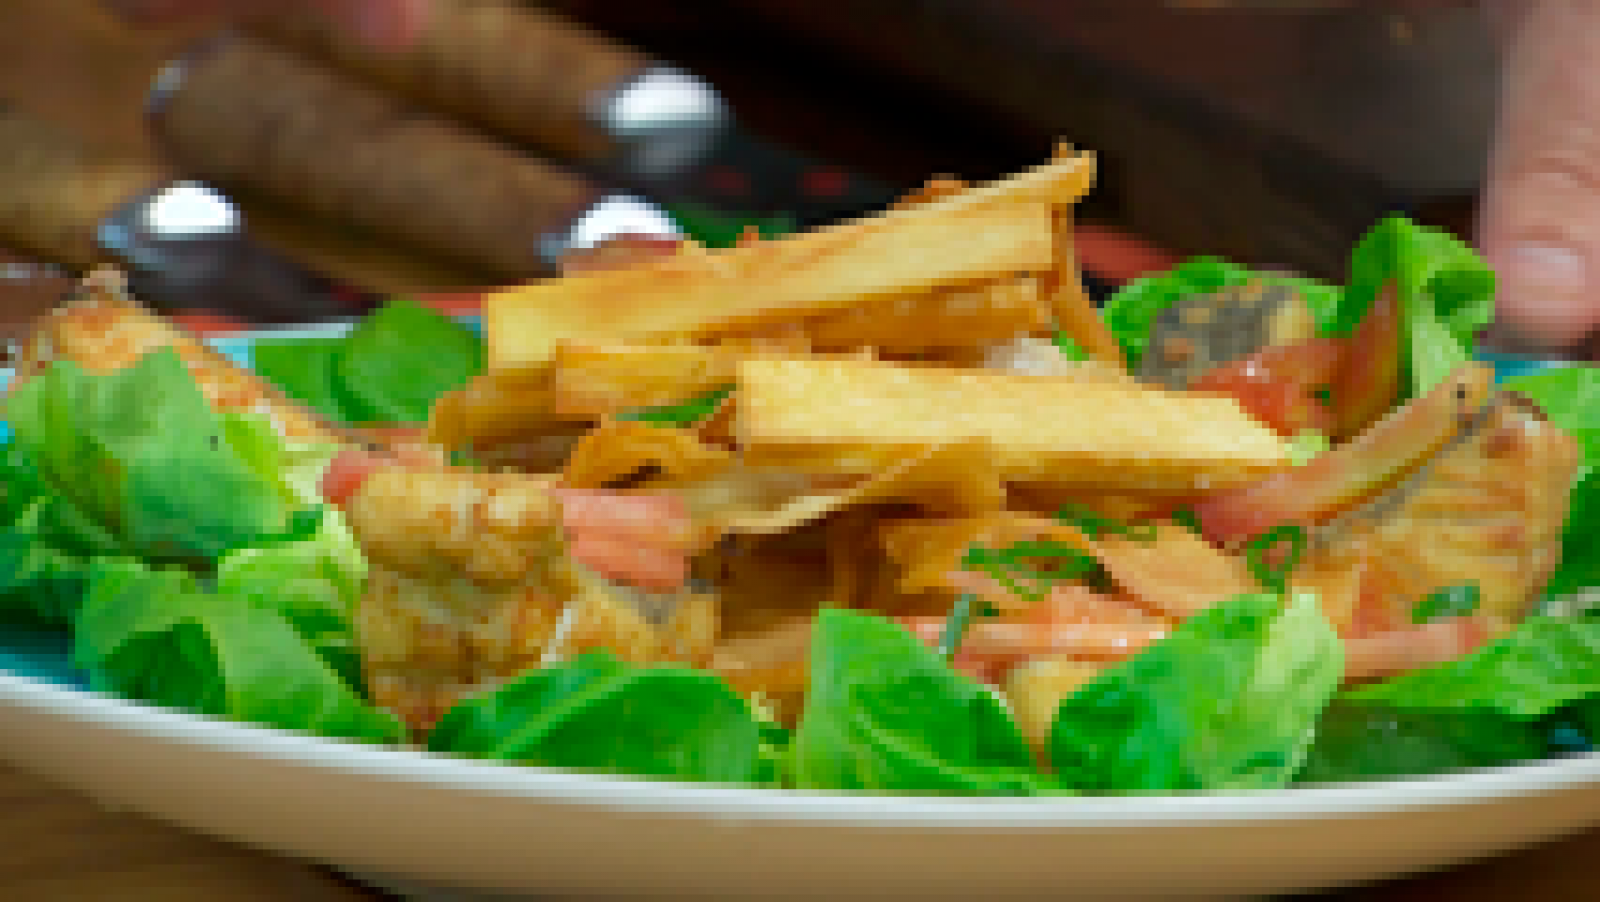 Torres en la cocina - Fish and chips de yuca